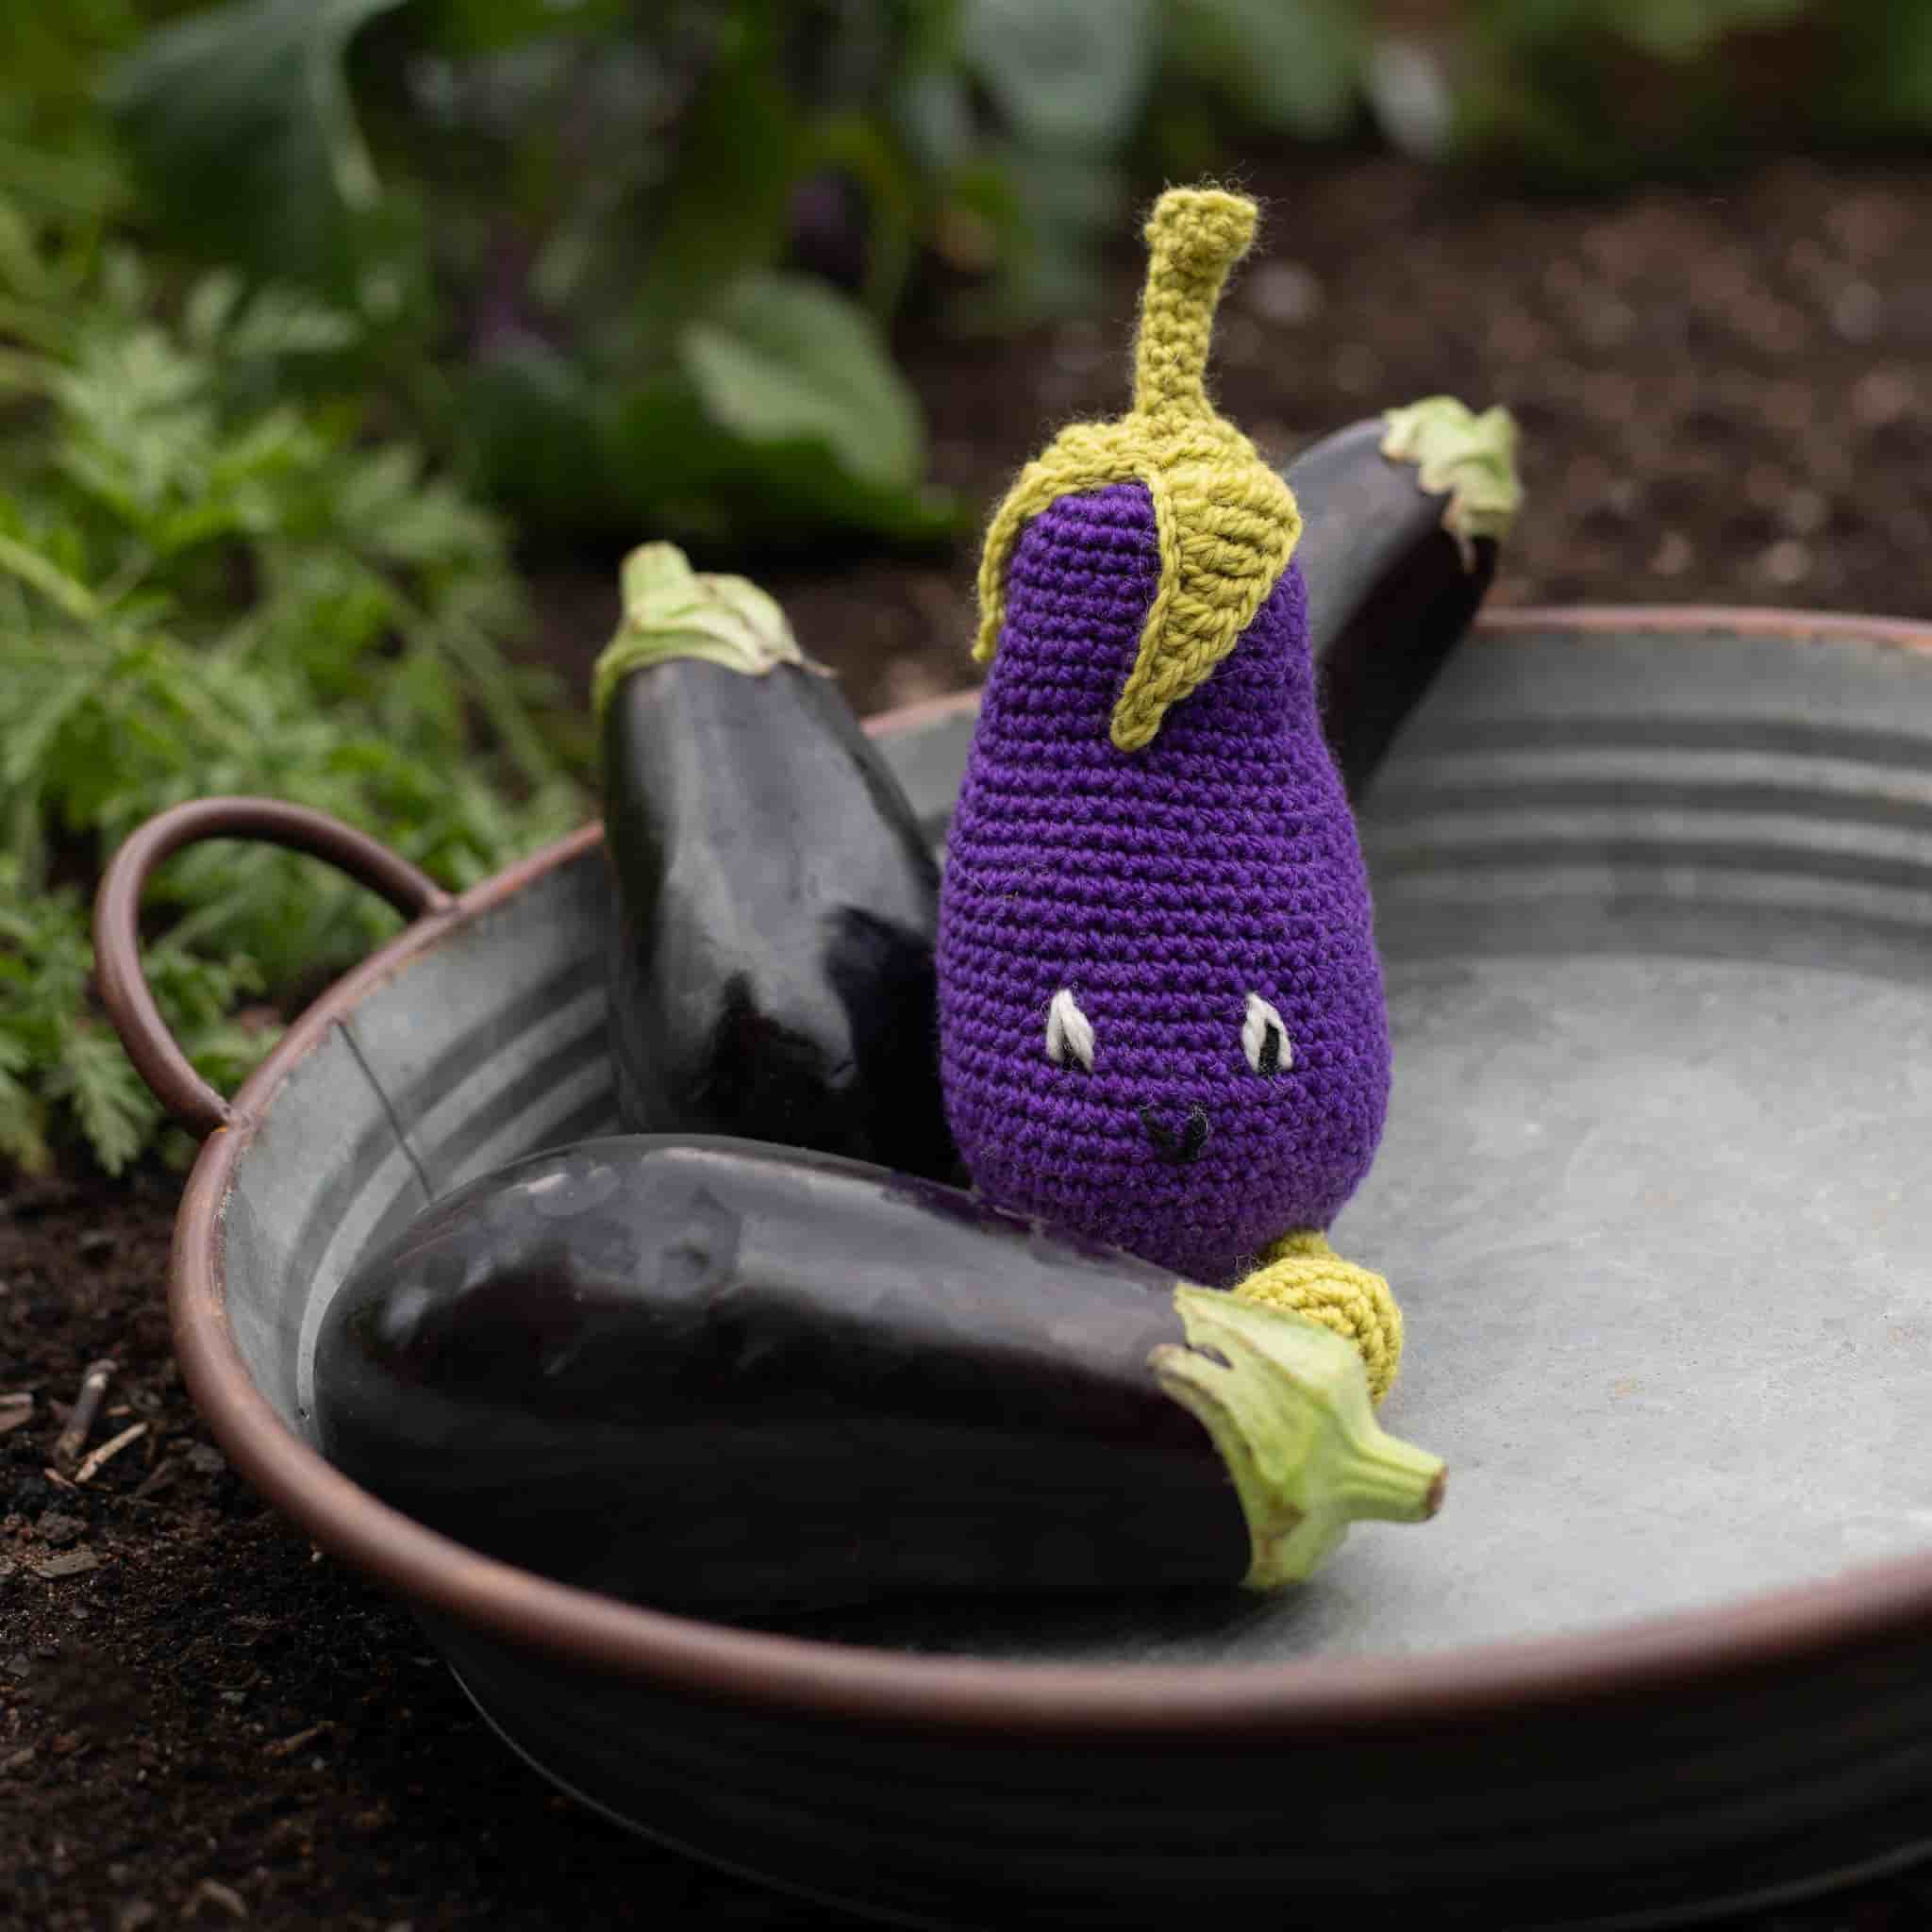 Make Your Own Aubergine Crochet Kit